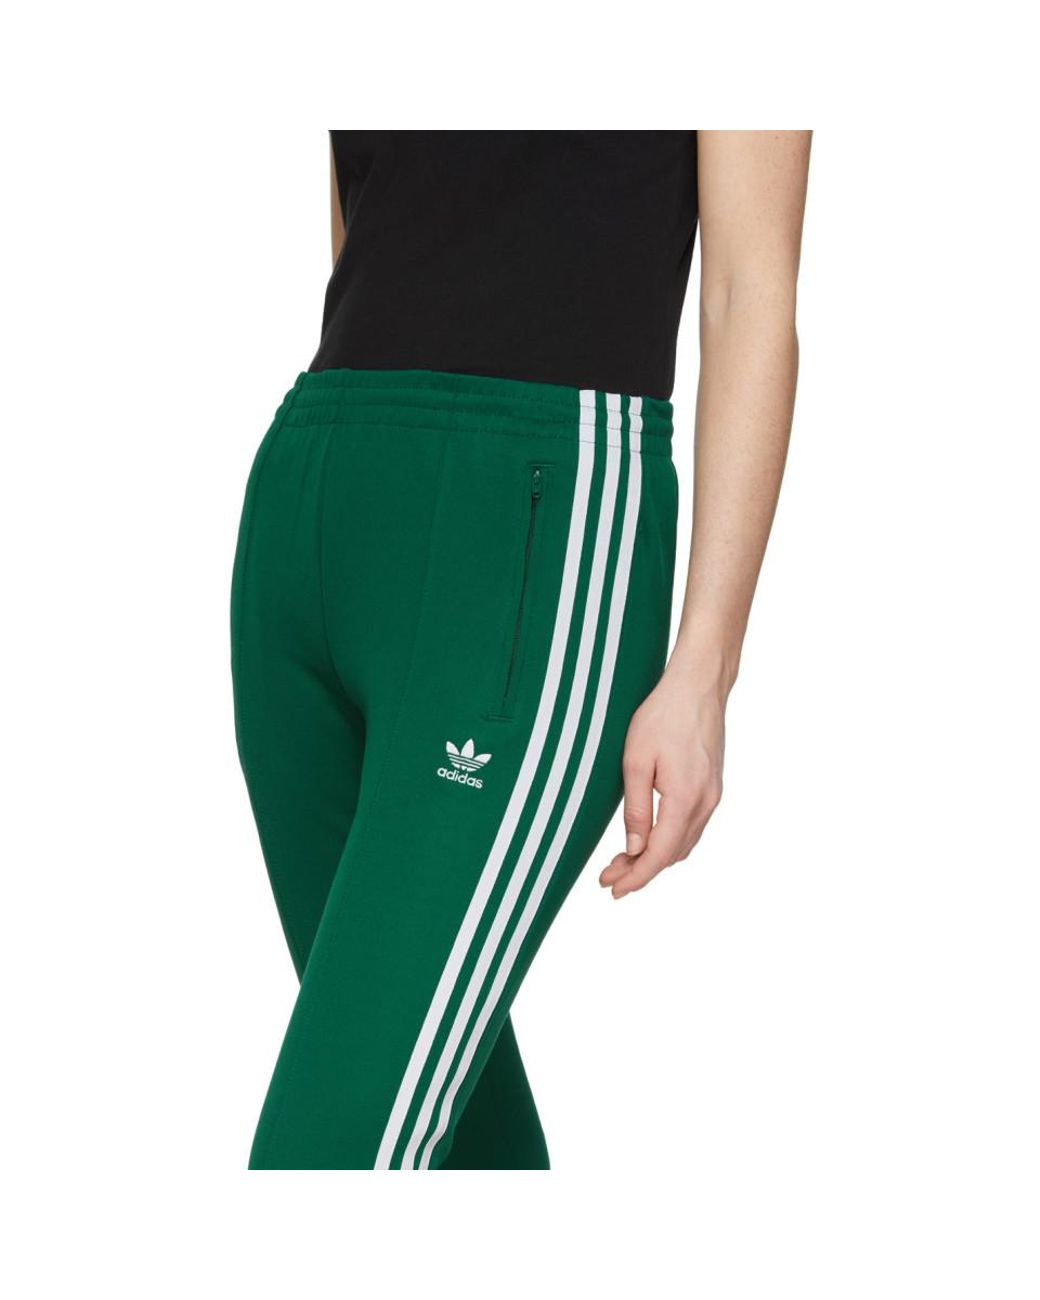 adidas Originals Green Sst Track Pants | Lyst